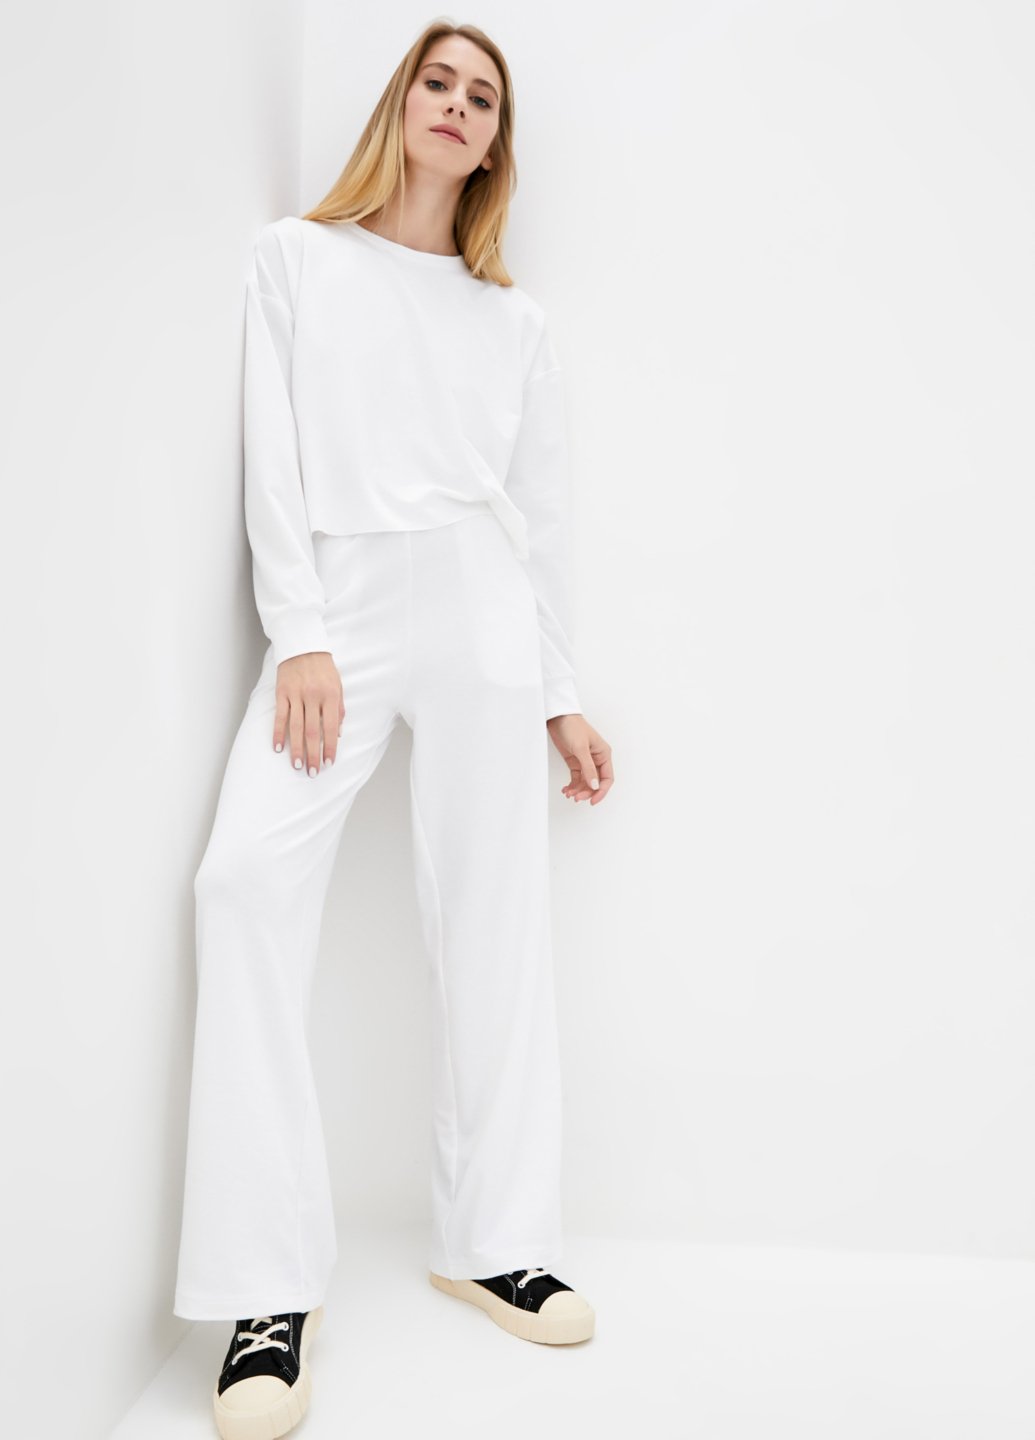 Купить Костюм женский белого цвета Merlini Хємпшир 100000058, размер 42-44 в интернет-магазине